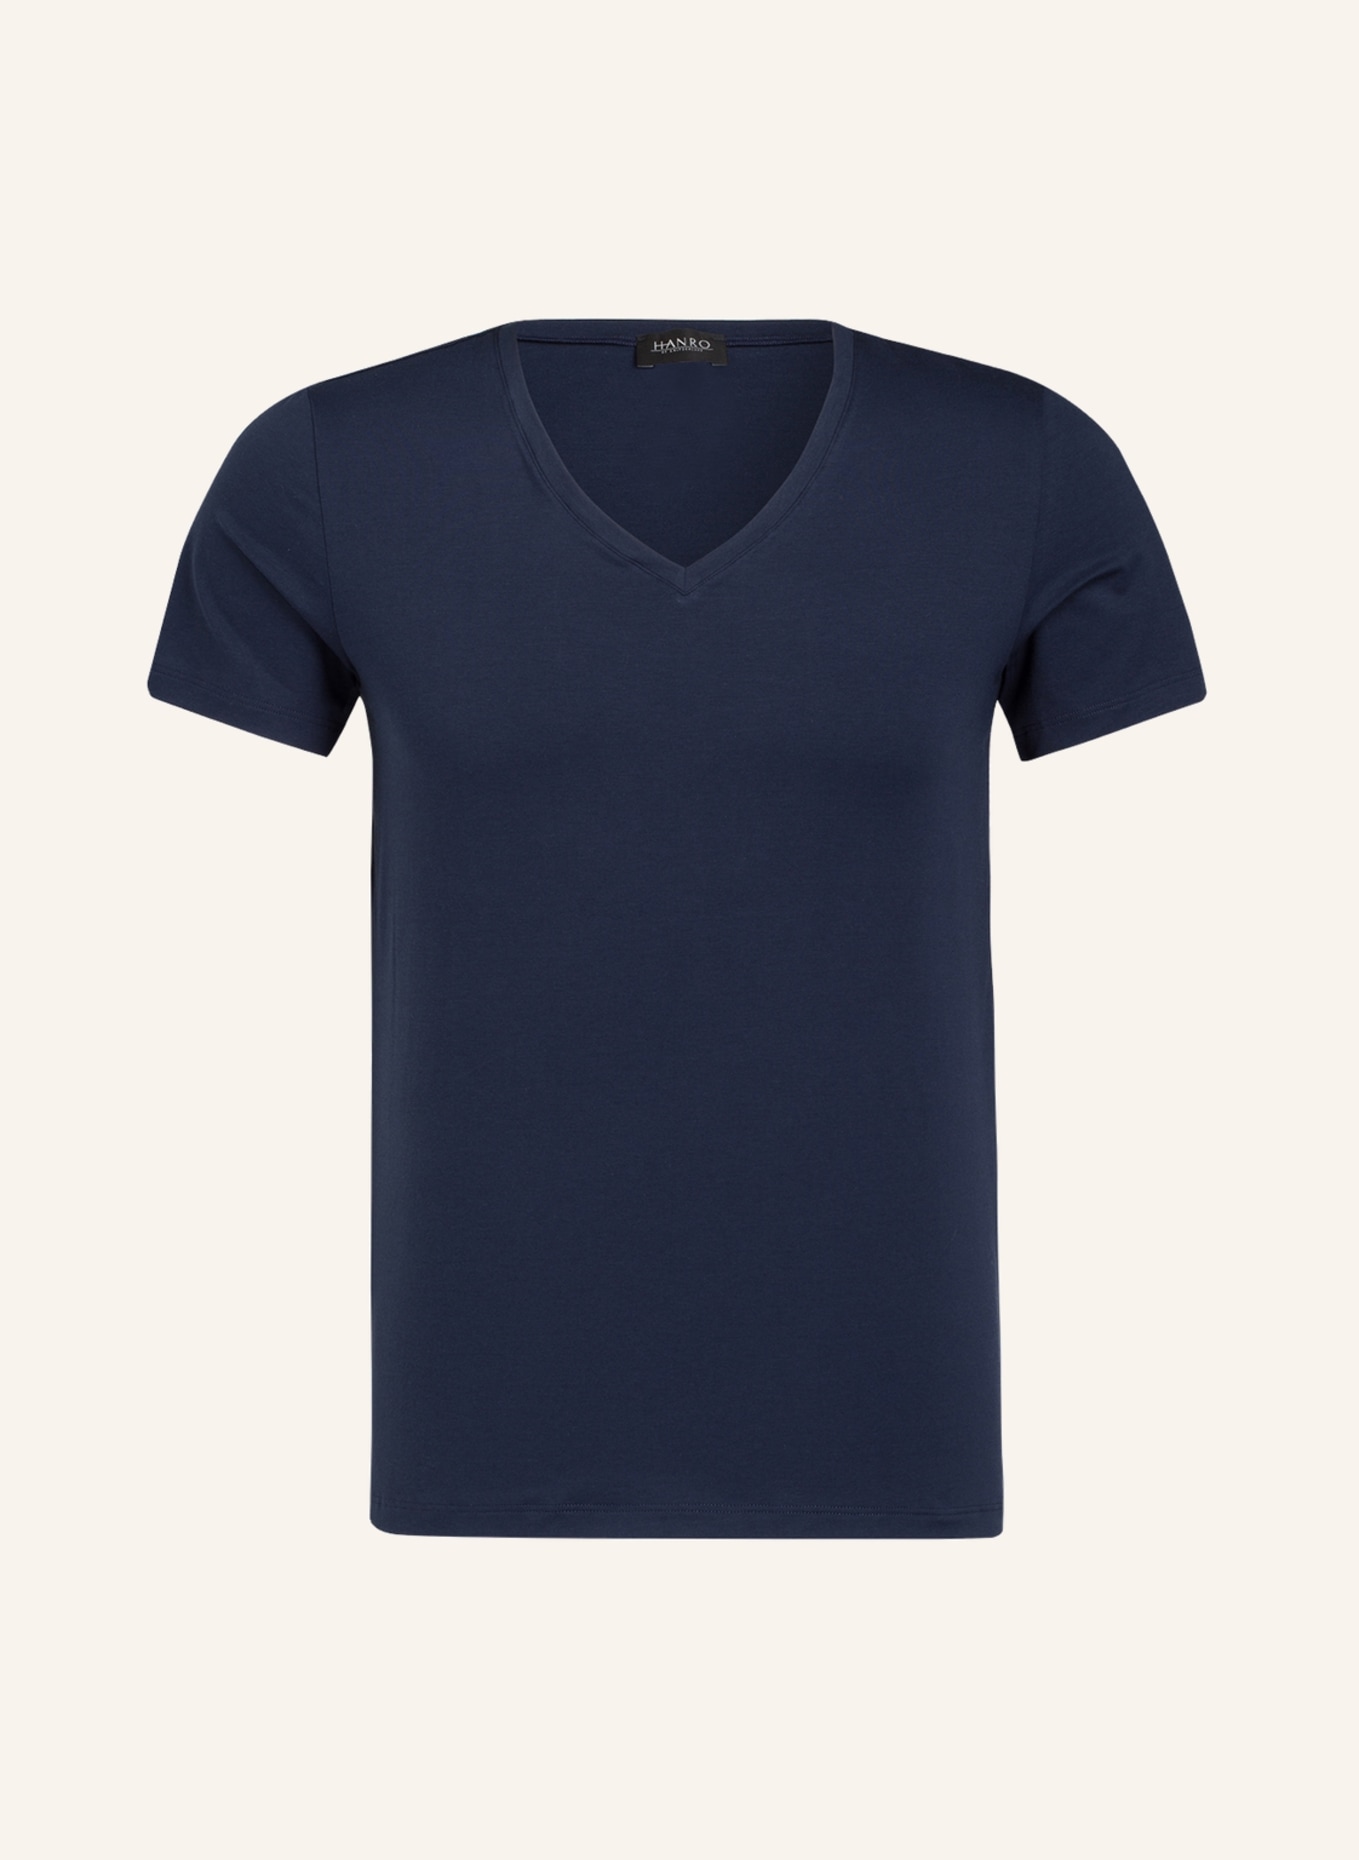 HANRO V-Shirt COTTON SUPERIOR, Farbe: NAVY (Bild 1)